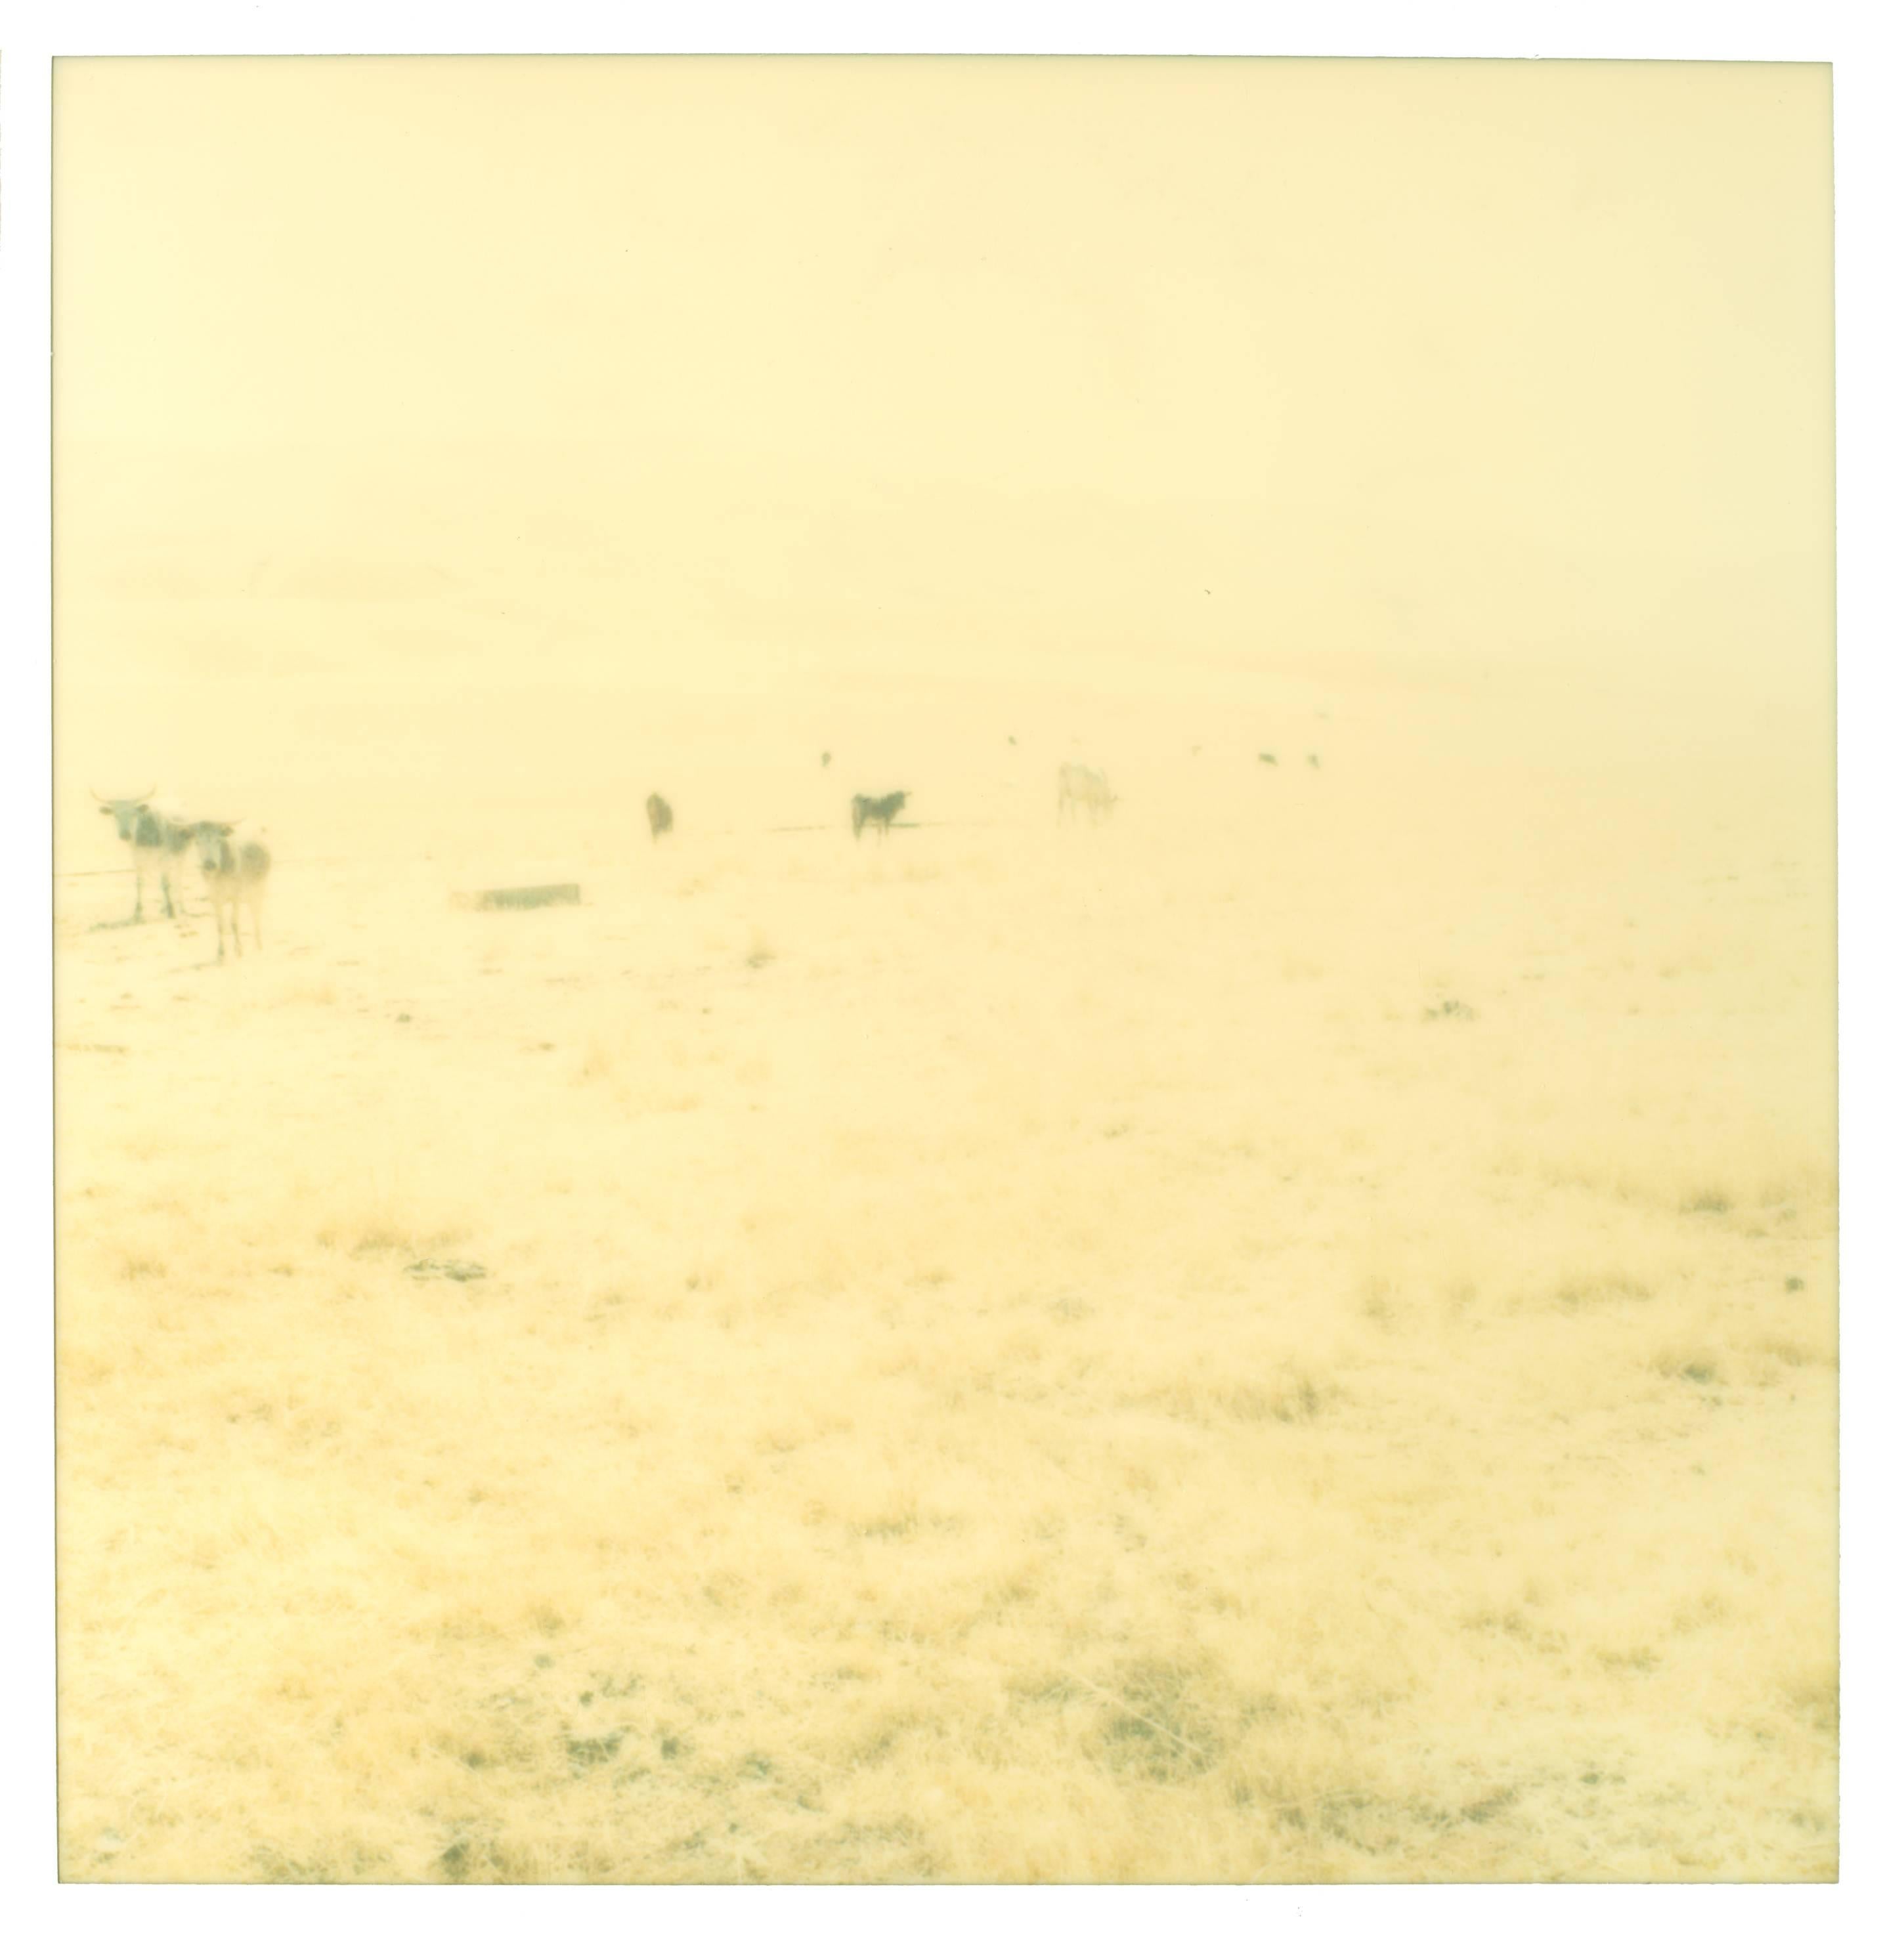 Stefanie Schneider Landscape Photograph – Ohne Titel (Oilfields) Zeitgenössisch, 21. Jahrhundert, Wüste, Polaroid, Landschaft